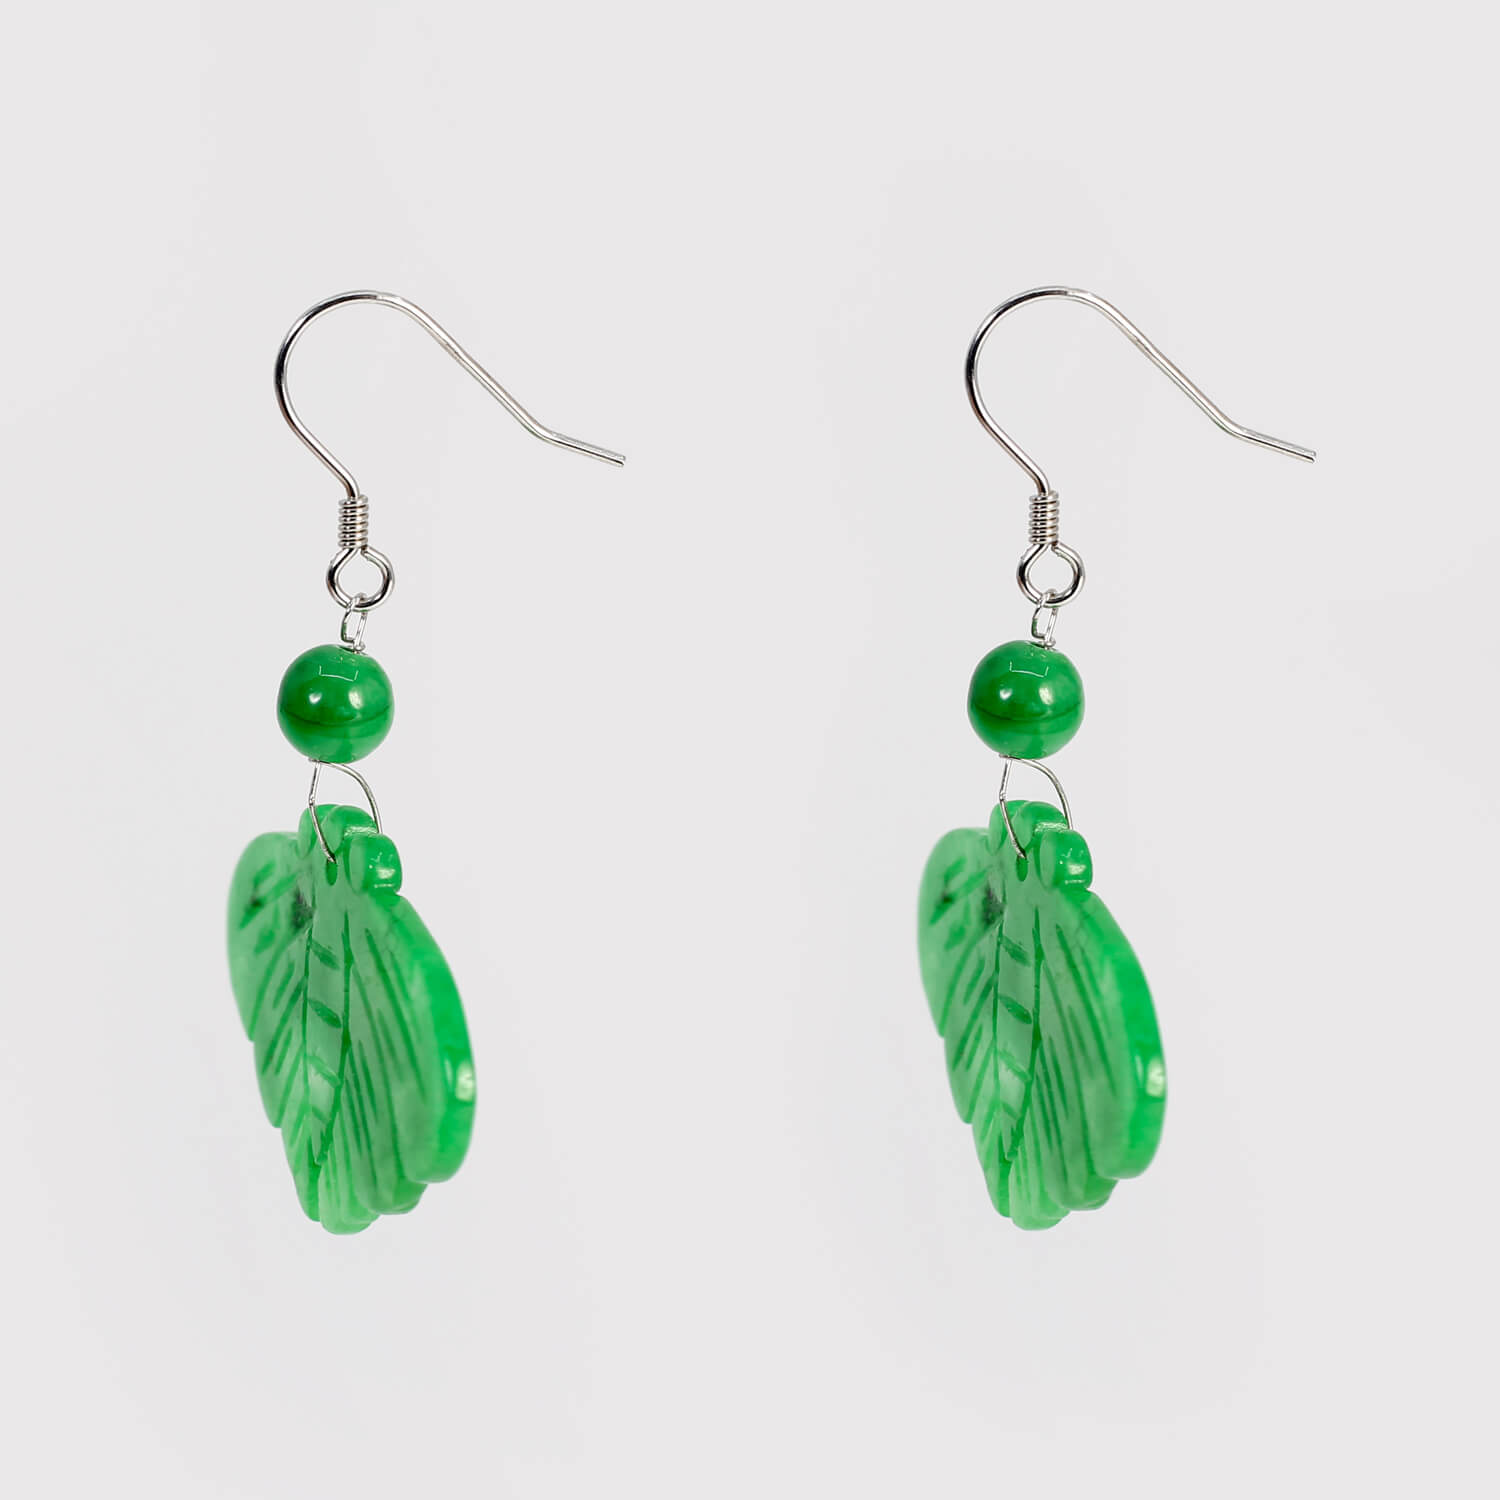 Green jade butterfly earrings